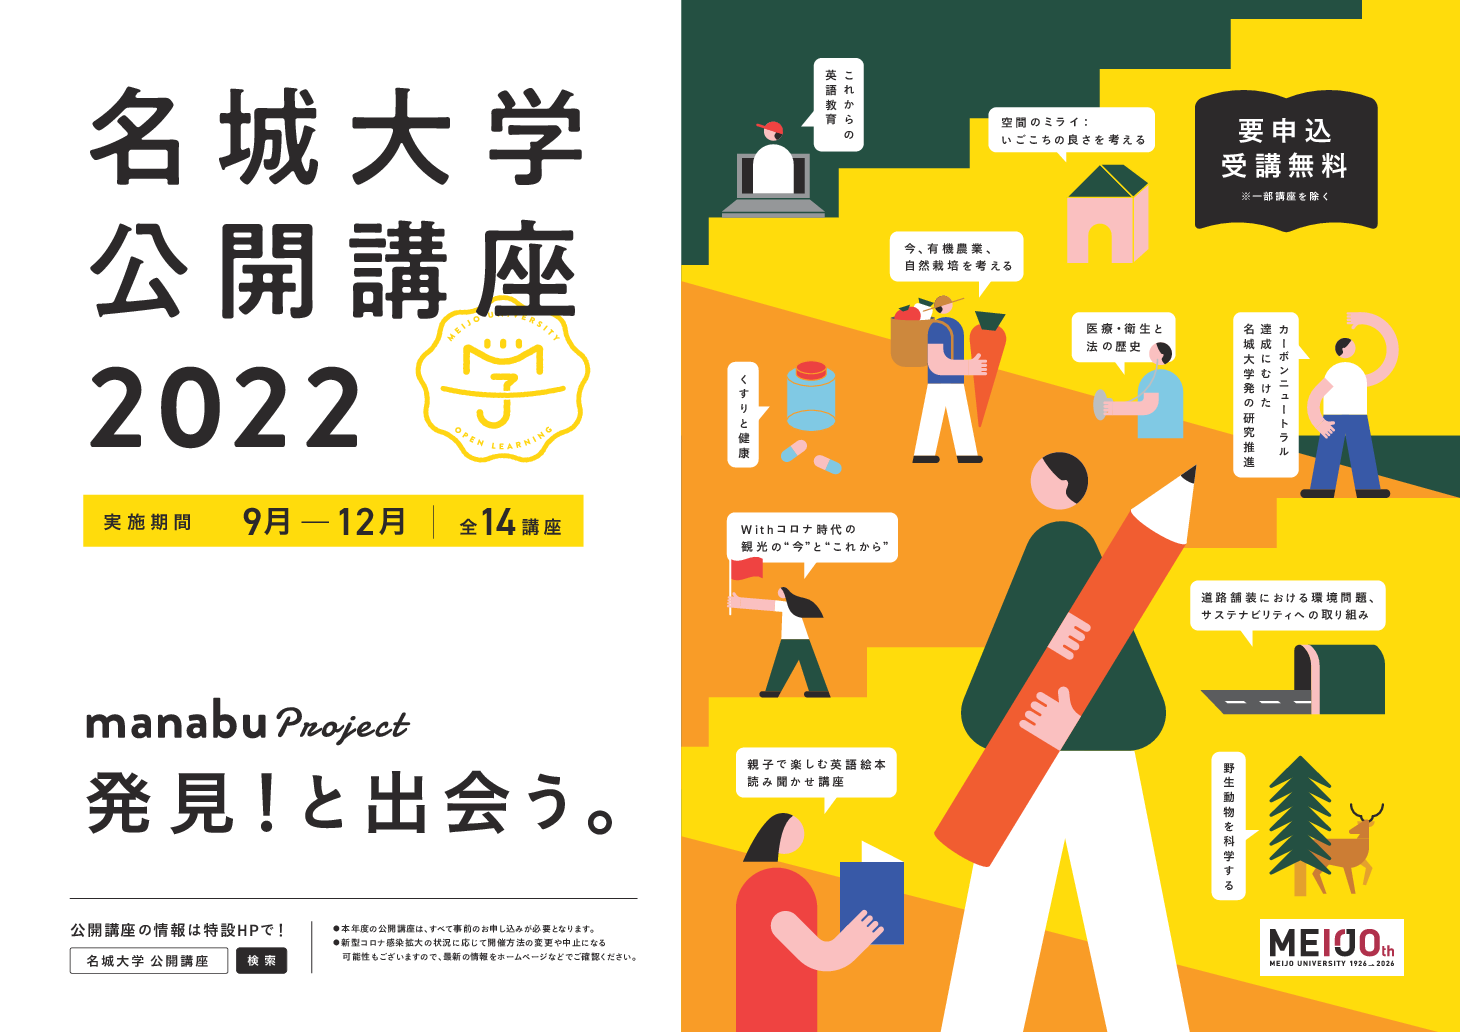 「名城大学公開講座2022 manabu project 」はじまります！